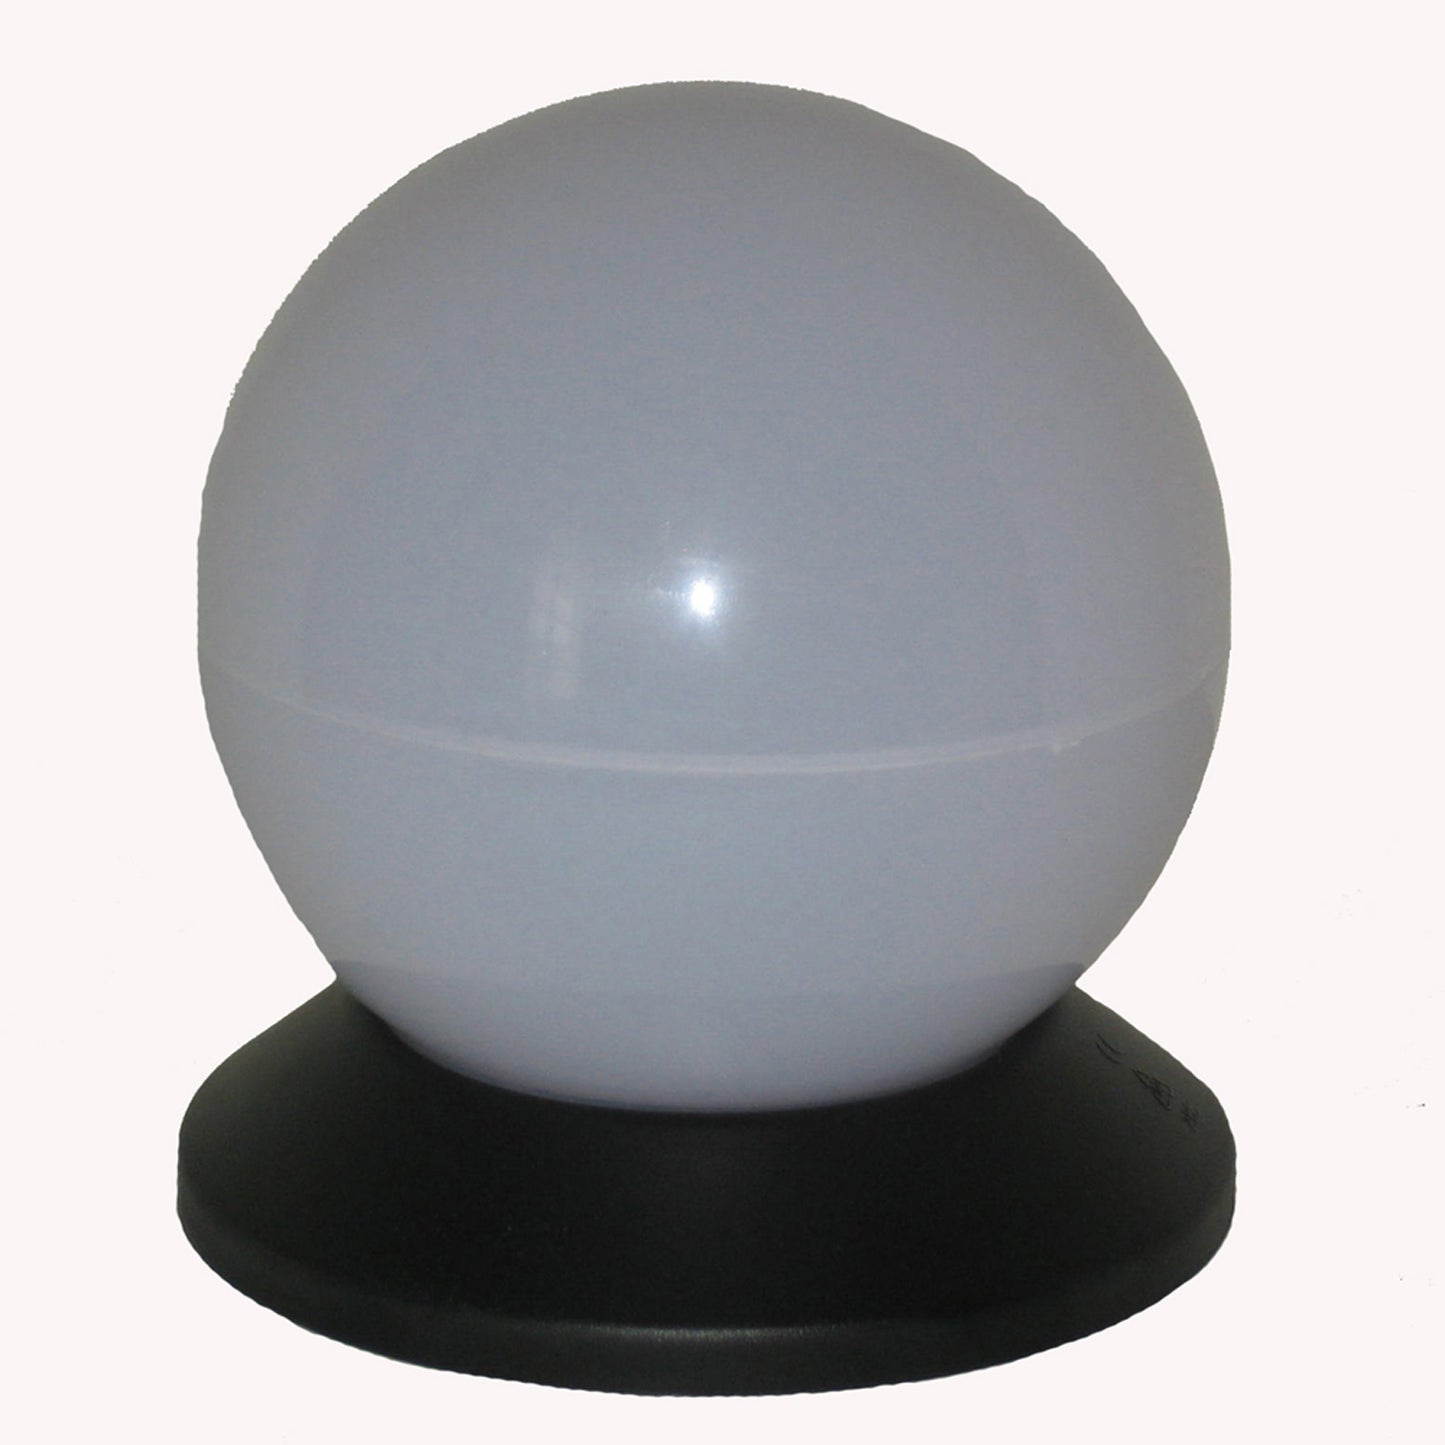 Smart Globe Solar Light - 6"" diameter